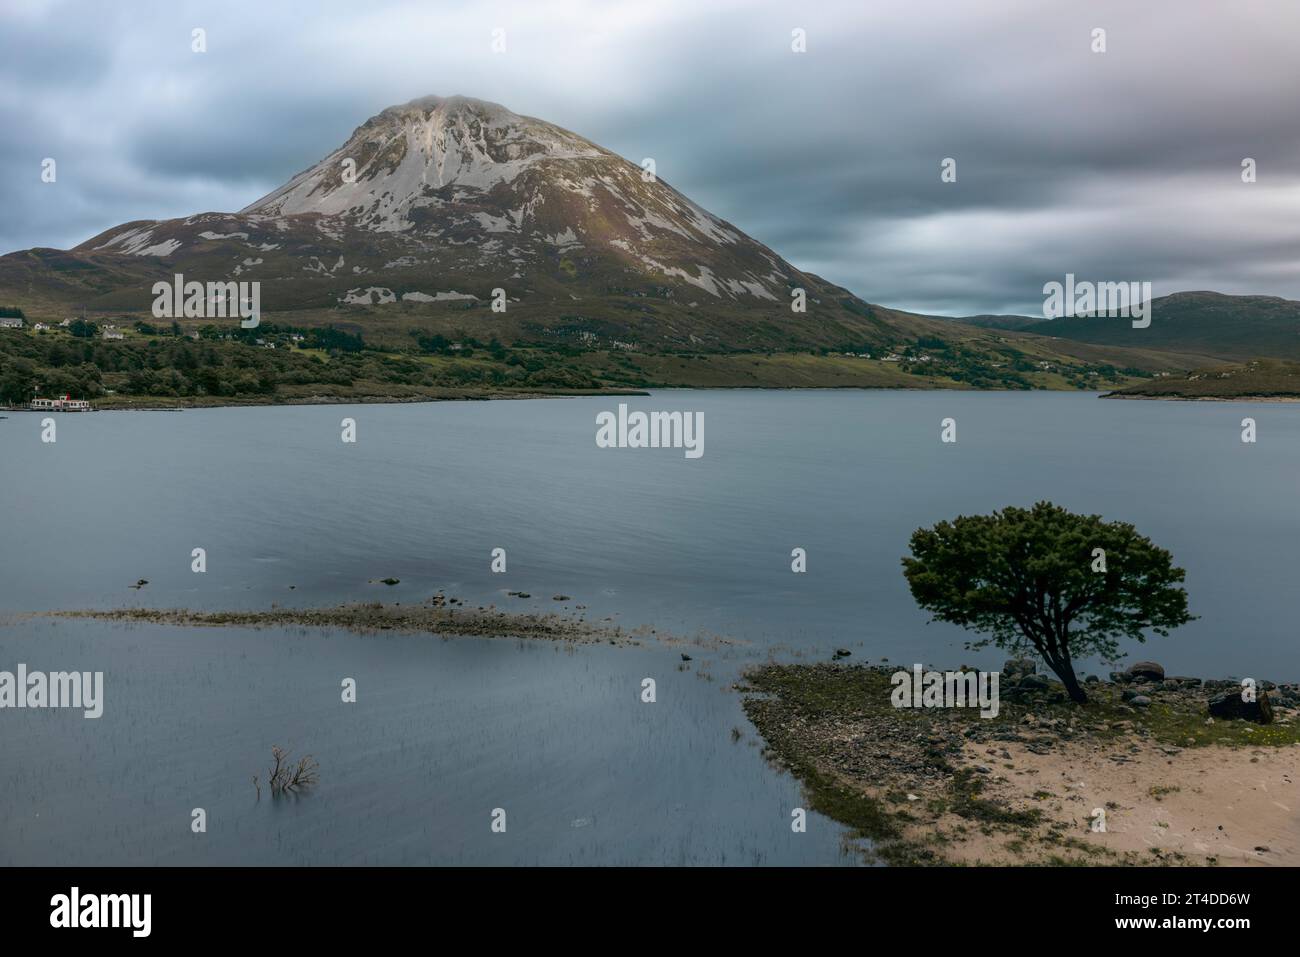 Dunlewey Lough in Irlanda, un pittoresco lago incastonato tra il maestoso Monte Errigal e la valle avvelenata. Foto Stock